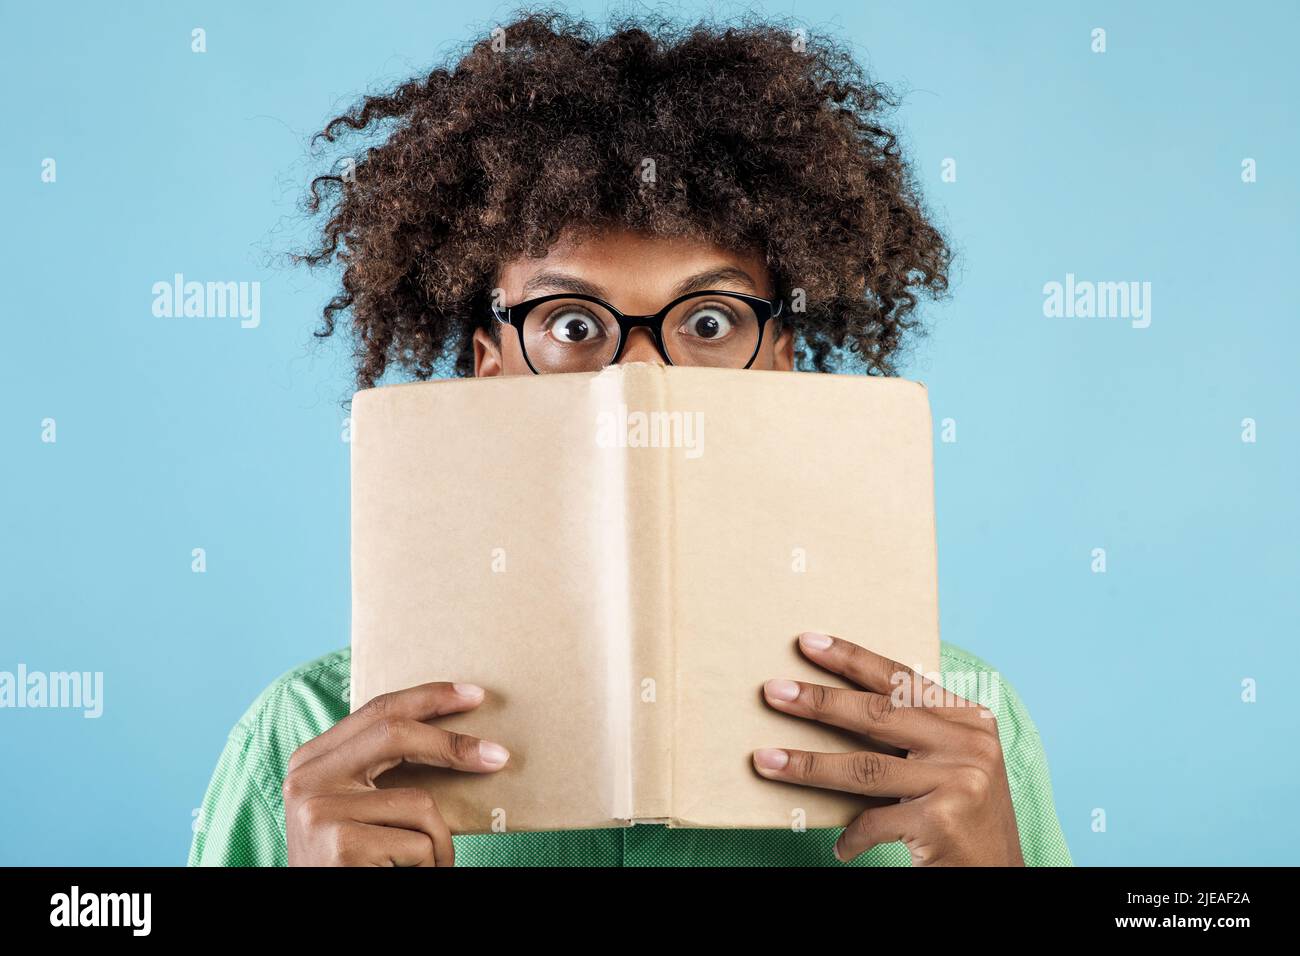 Portrait de l'homme américain africain émotionnel en lunettes couvrant le visage avec le livre, se cachant derrière lui avec les yeux grands ouverts Banque D'Images